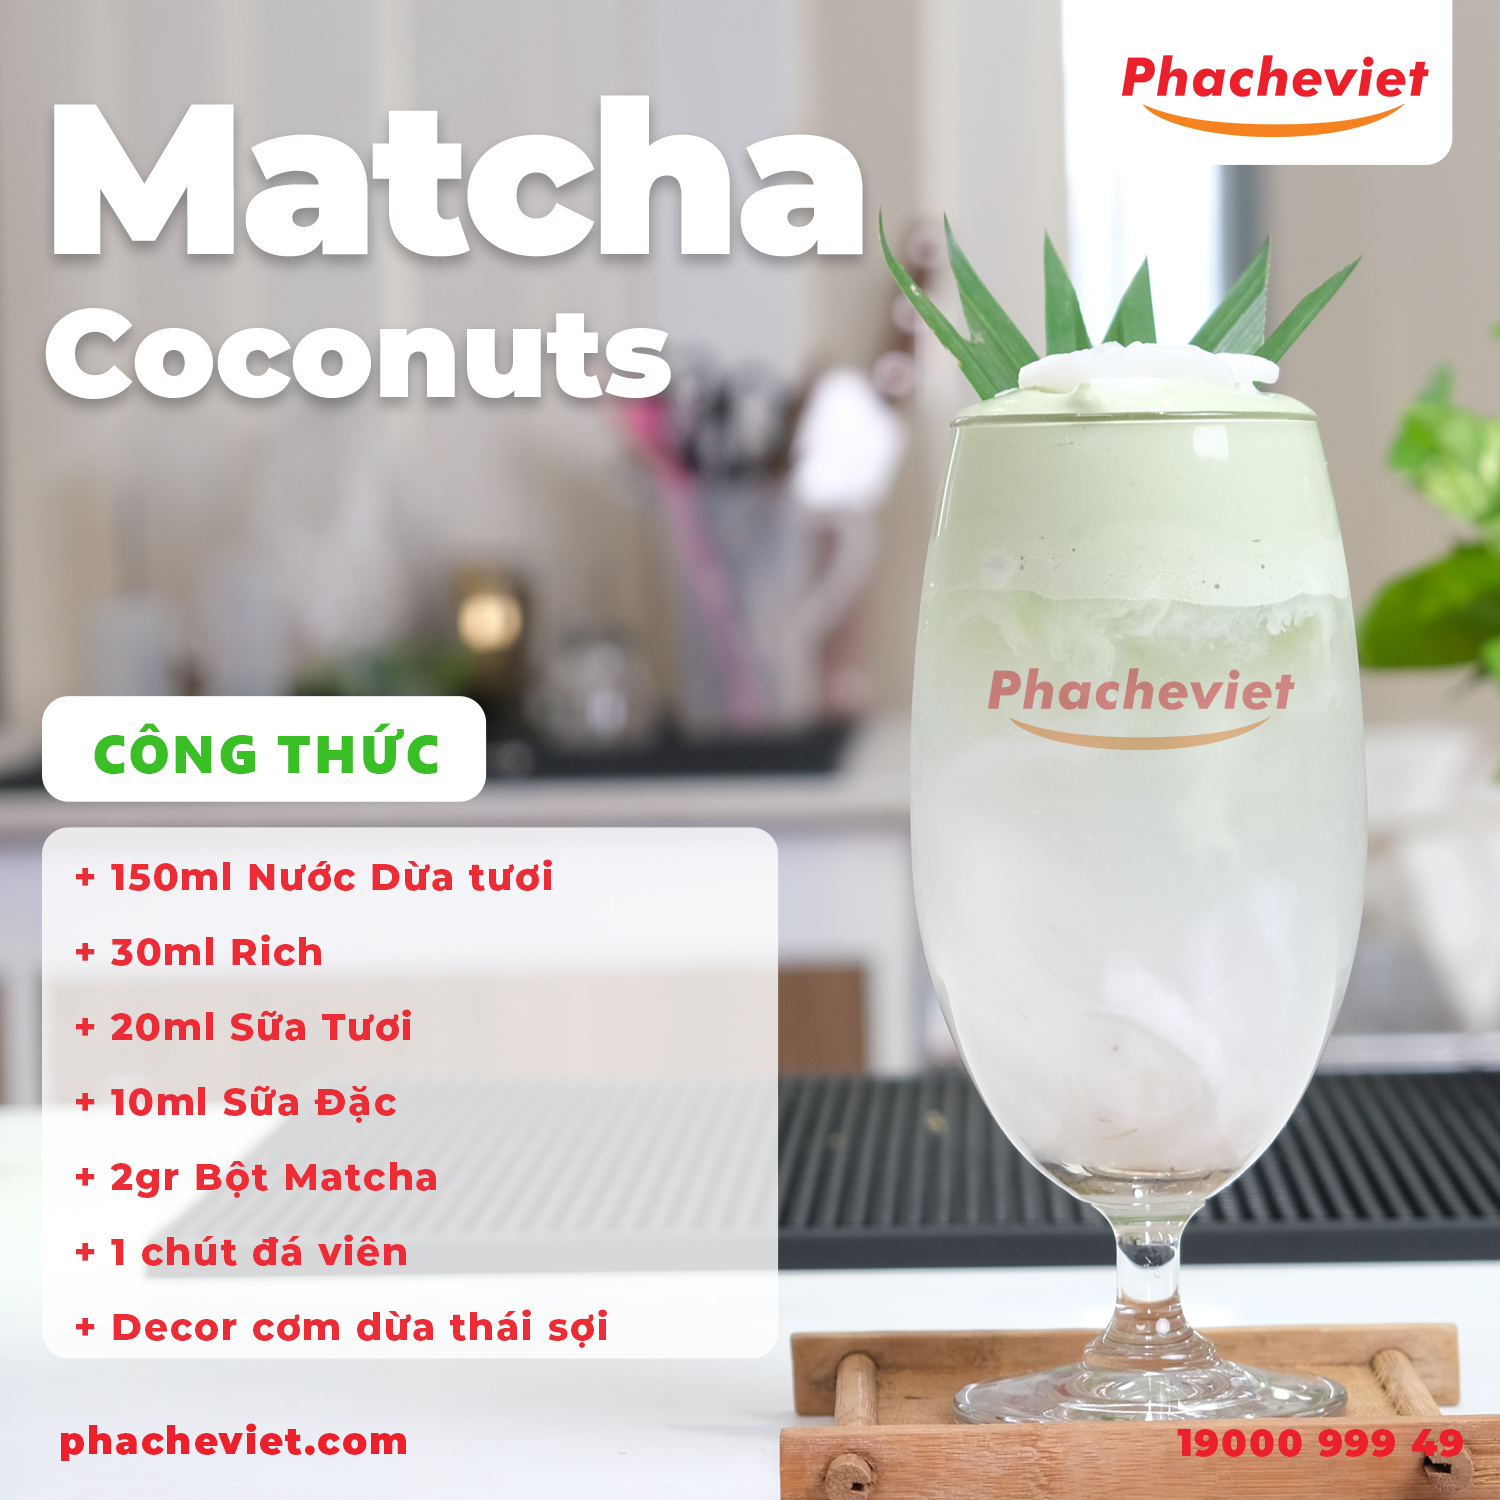 Công thức pha chế Matcha Coconuts thanh mát